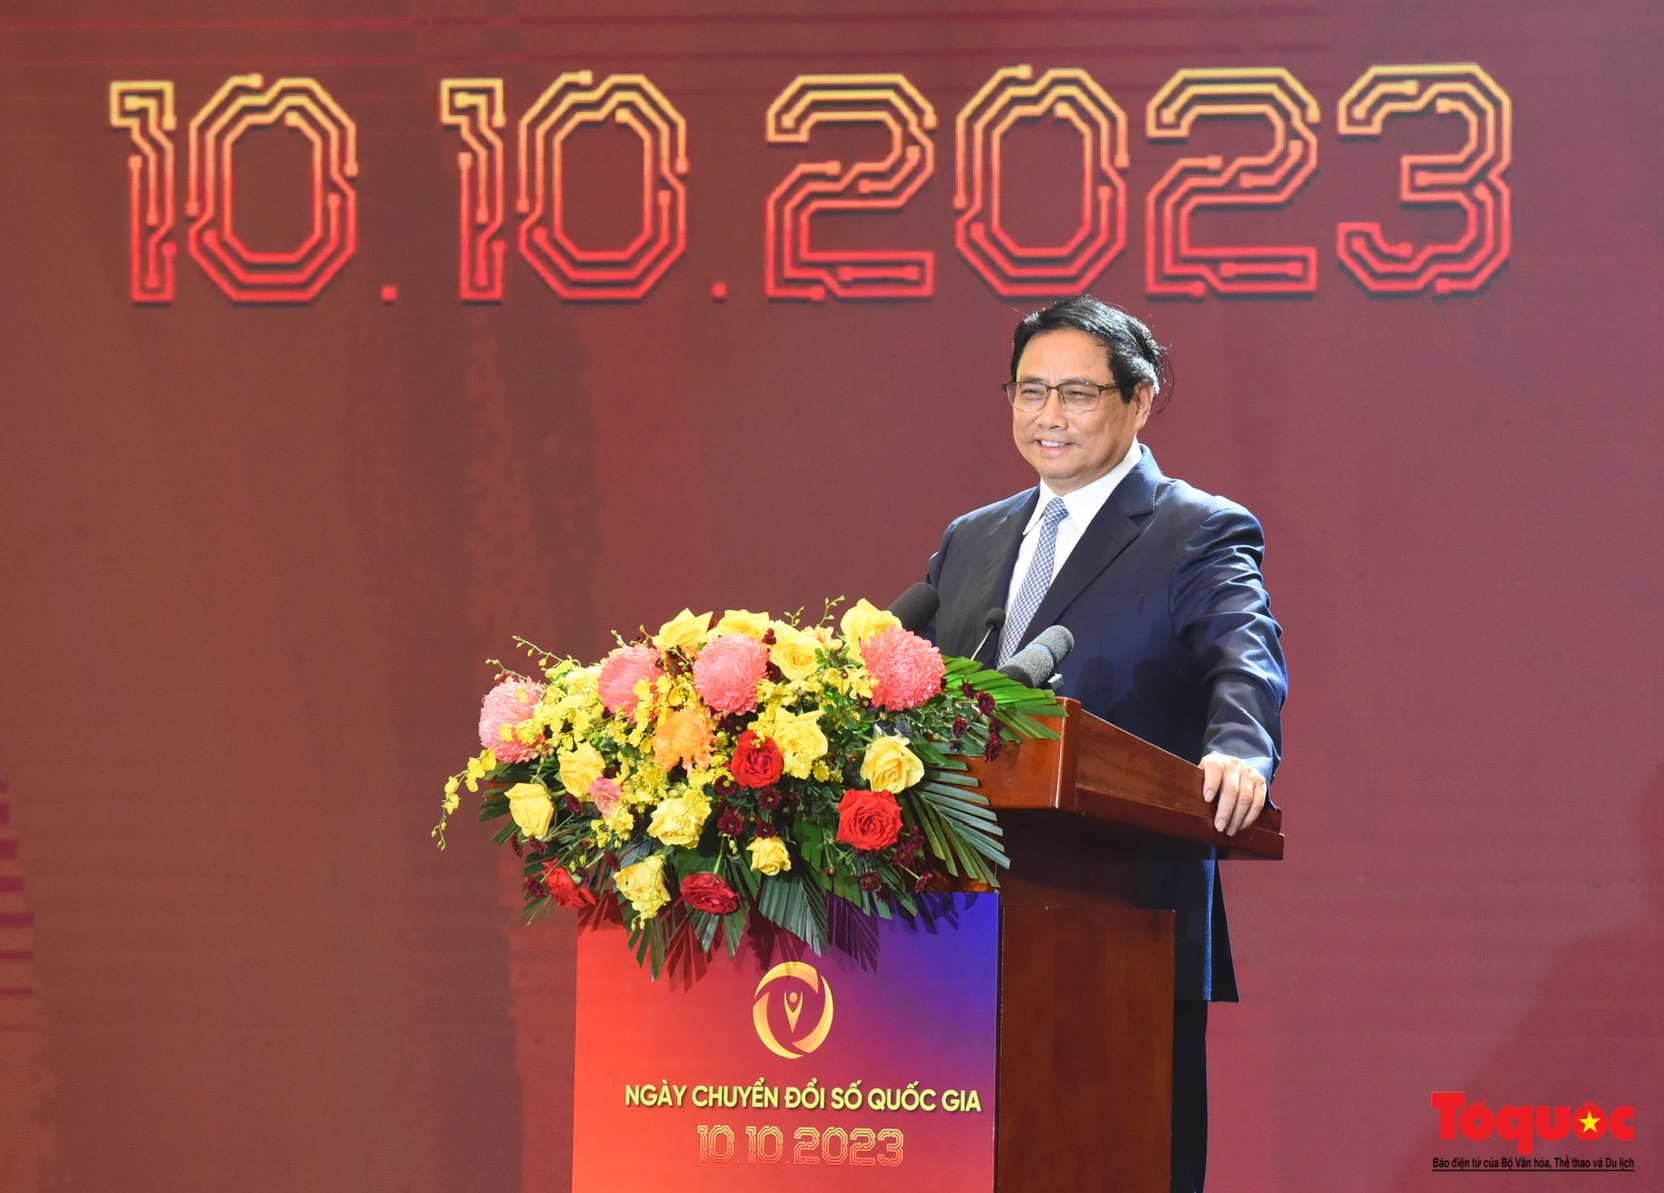 Chùm ảnh: Thủ tướng Phạm Minh Chính dự Ngày Chuyển đổi số quốc gia năm 2023 - Ảnh 7.